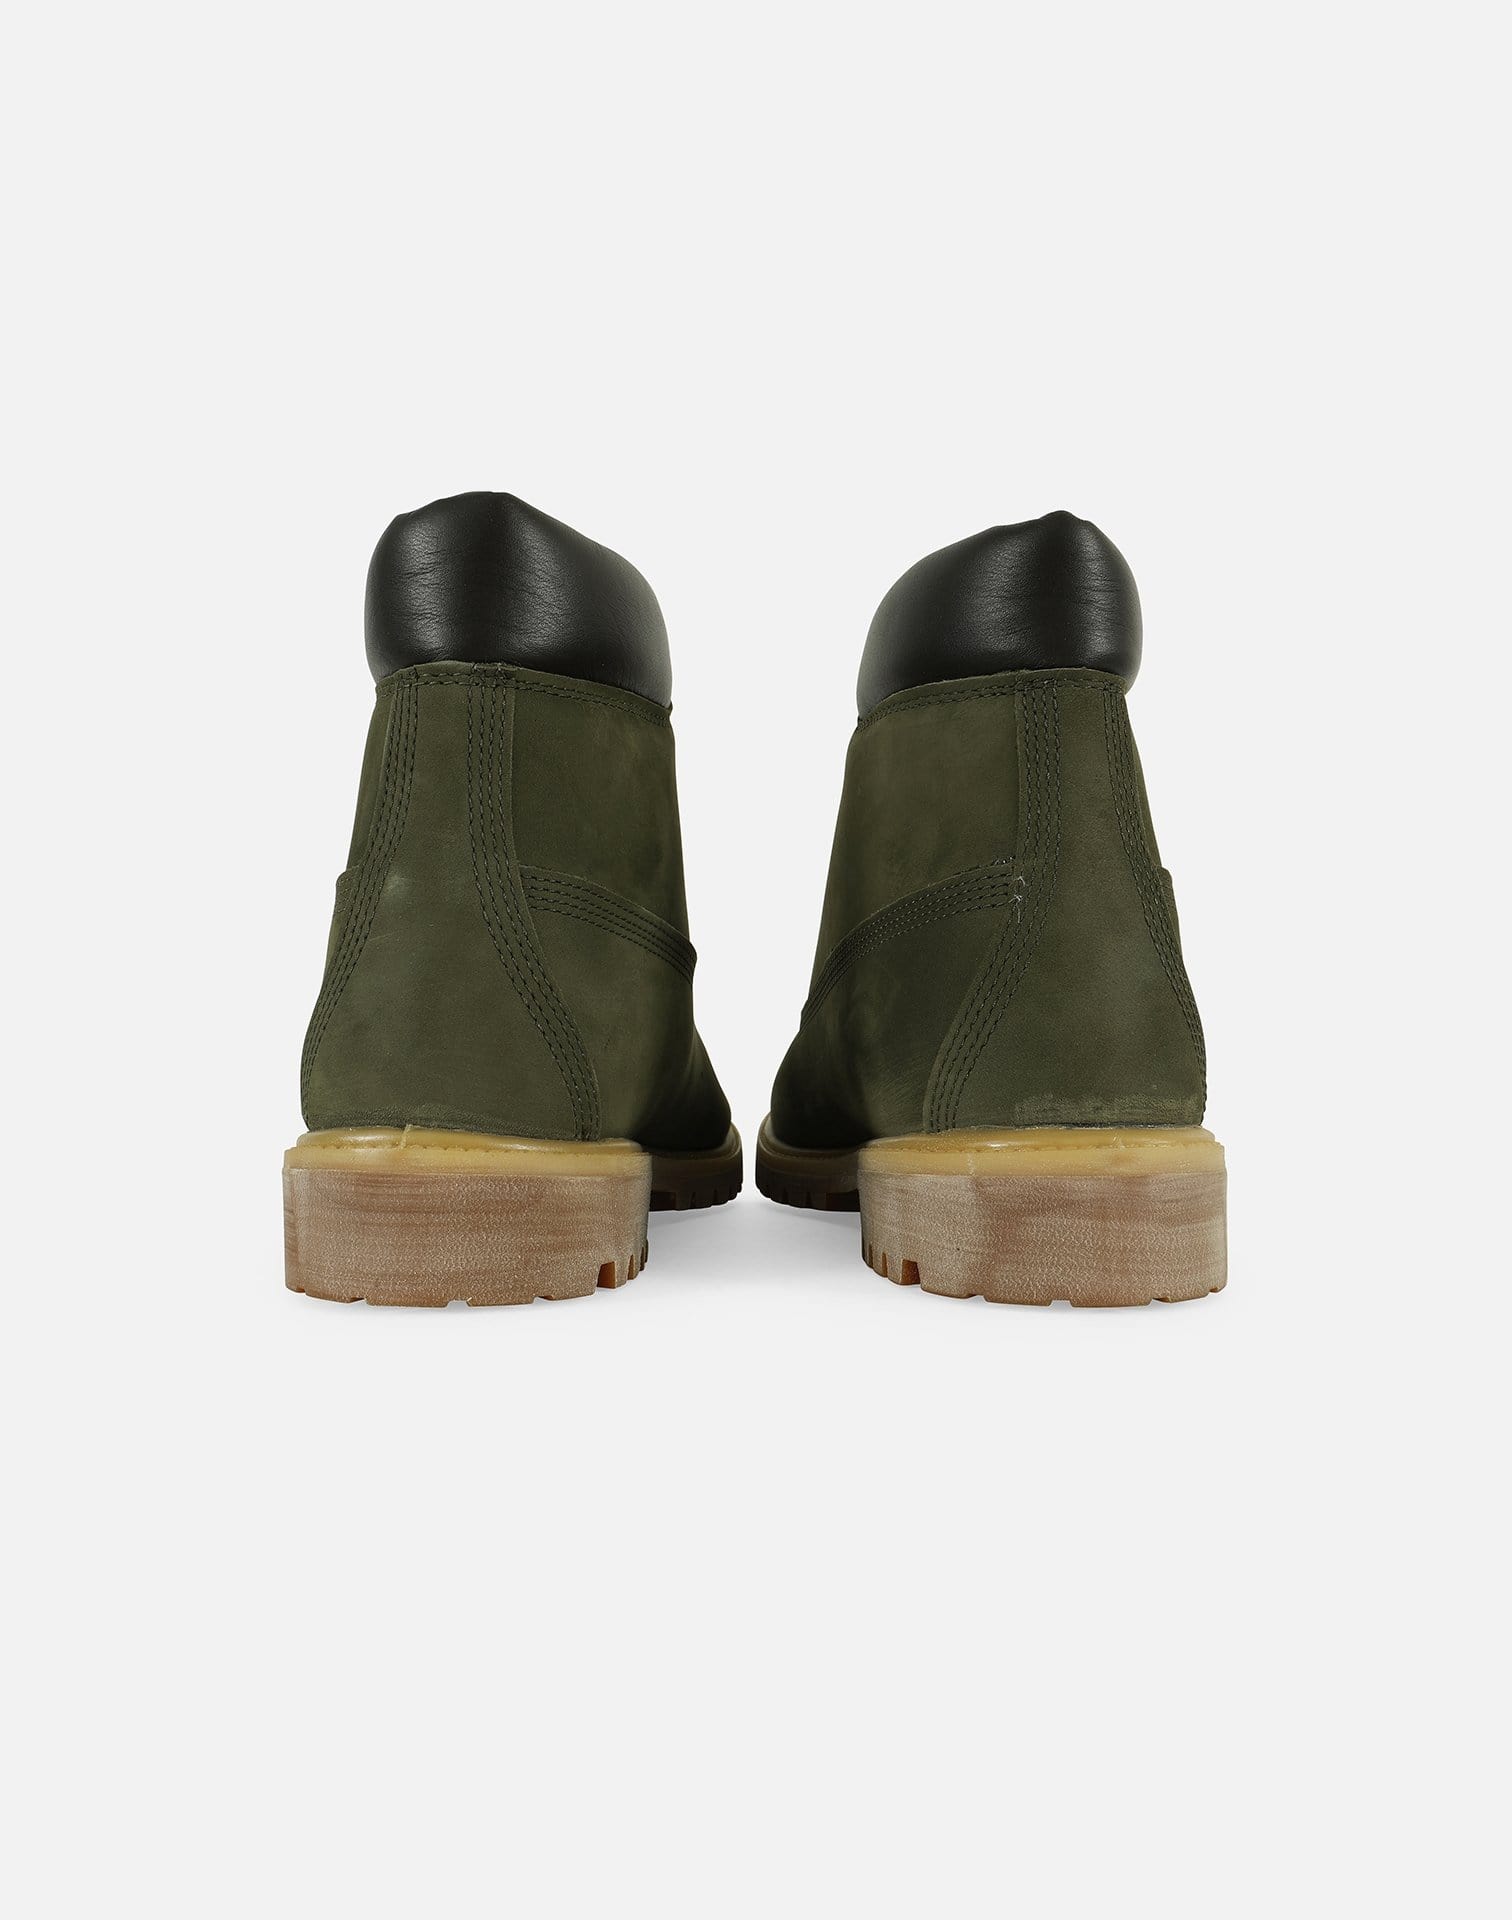 Timberland Men's 6" Premium Waterproof Boots